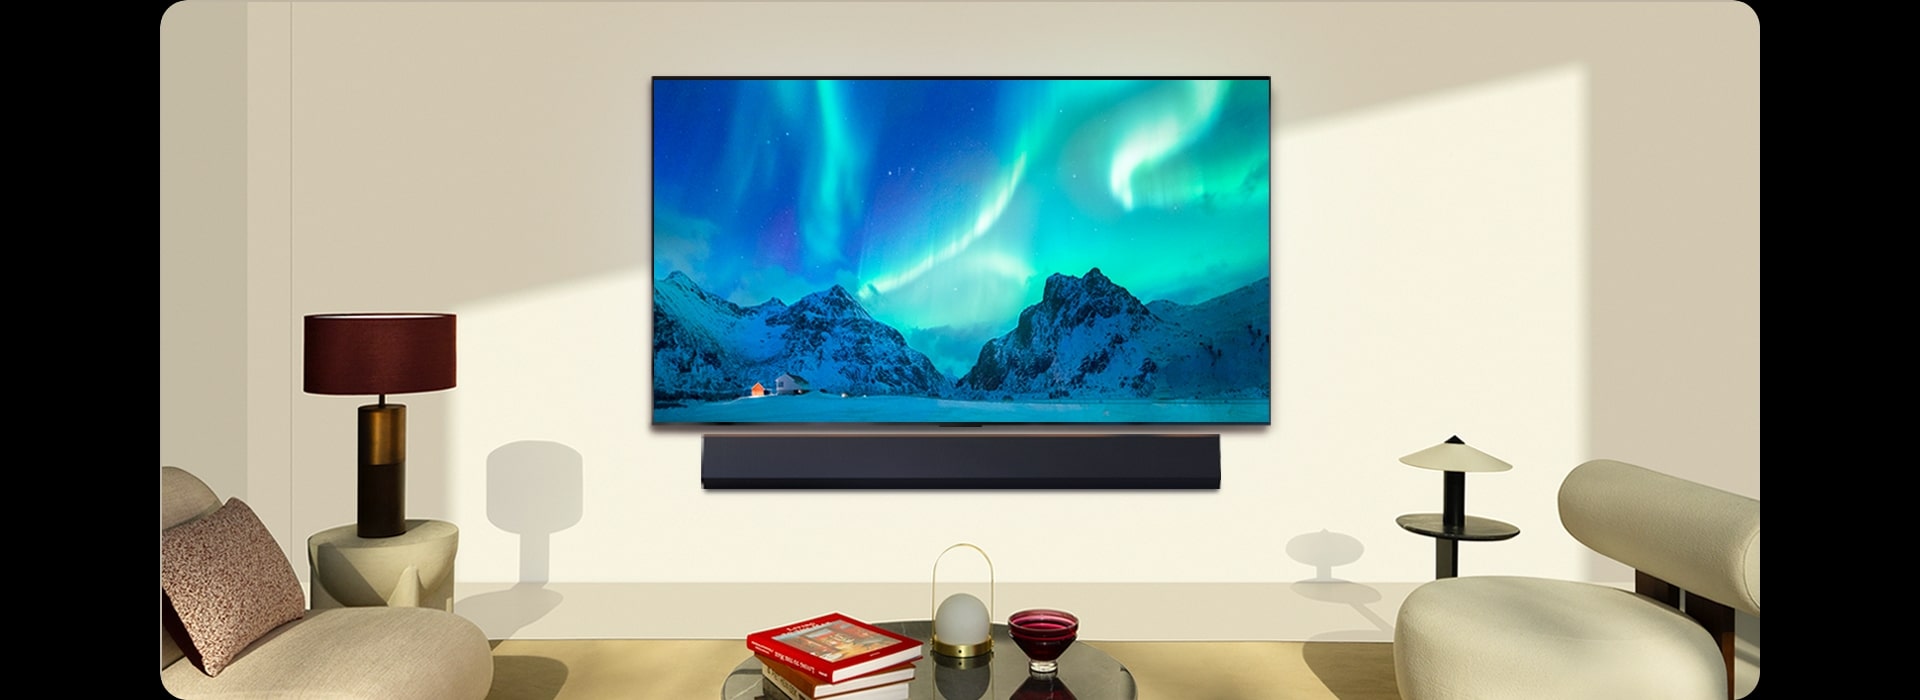 El televisor LG OLED evo  y una barra de sonido LG en un espacio moderno durante el día. La imagen de la aurora boreal se muestra con los niveles de brillo ideales.